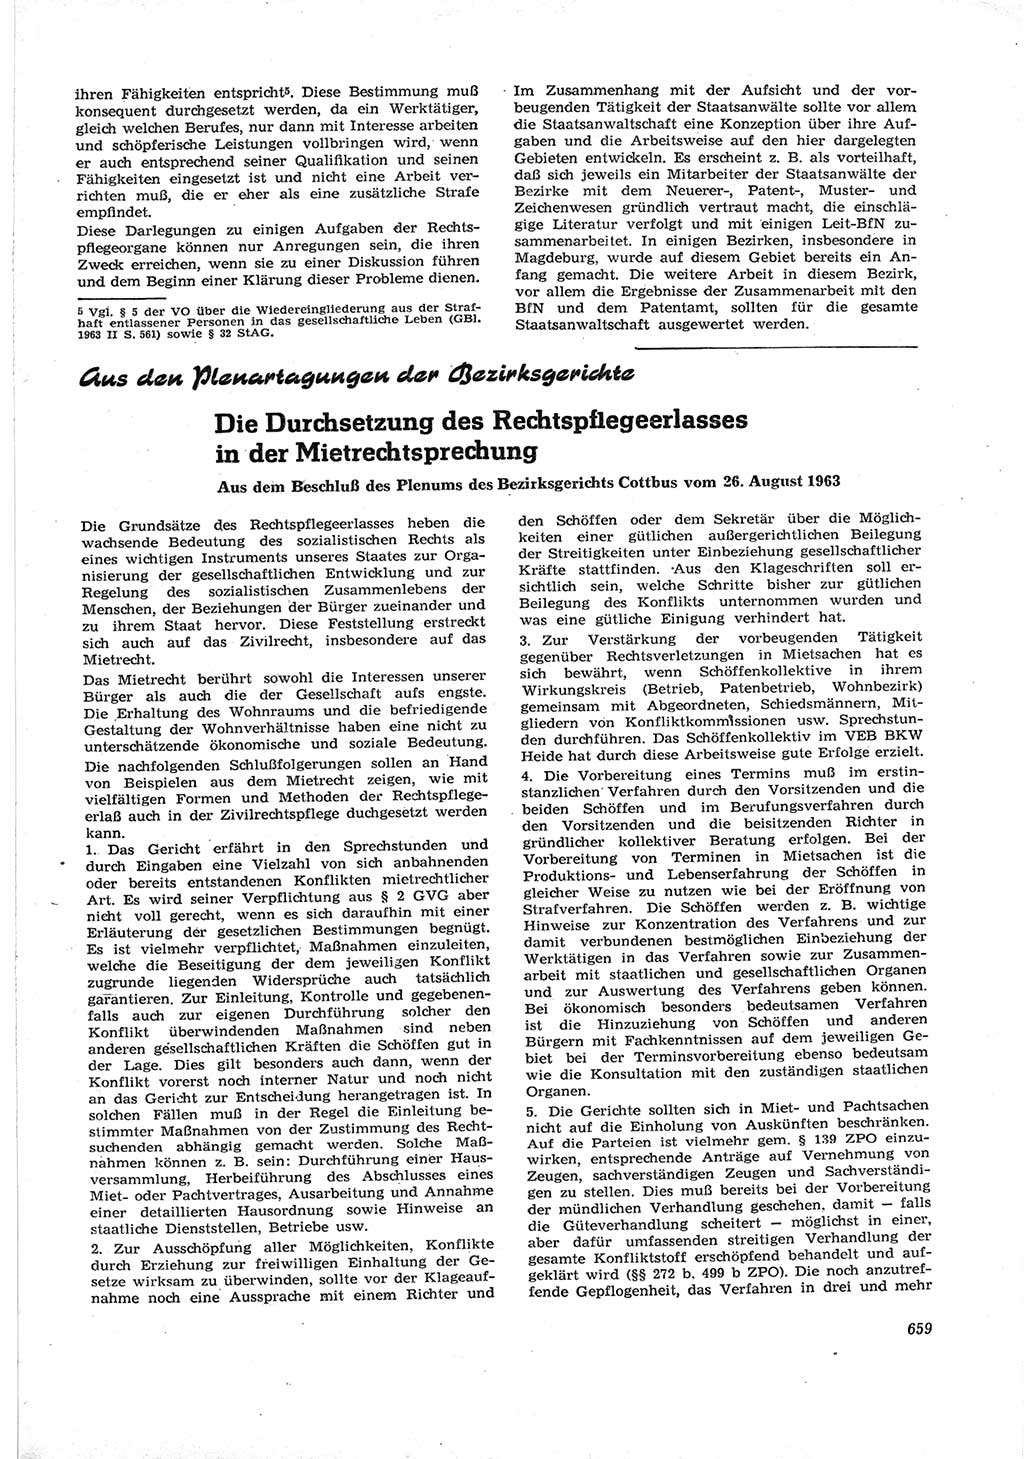 Neue Justiz (NJ), Zeitschrift für Recht und Rechtswissenschaft [Deutsche Demokratische Republik (DDR)], 17. Jahrgang 1963, Seite 659 (NJ DDR 1963, S. 659)